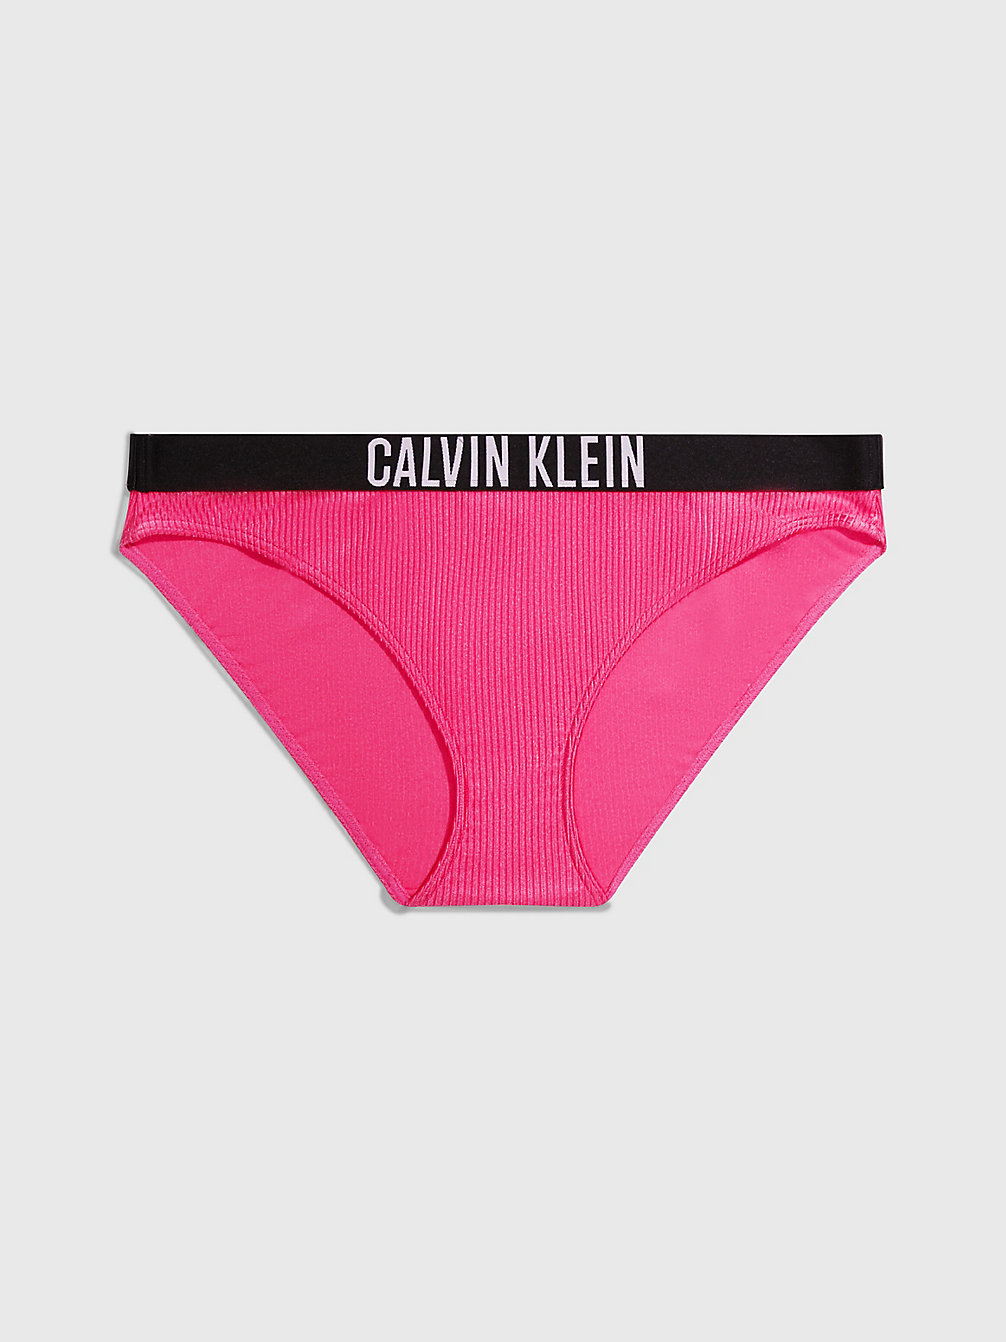 PINK FLASH Bikini Bottoms - Intense Power undefined women Calvin Klein